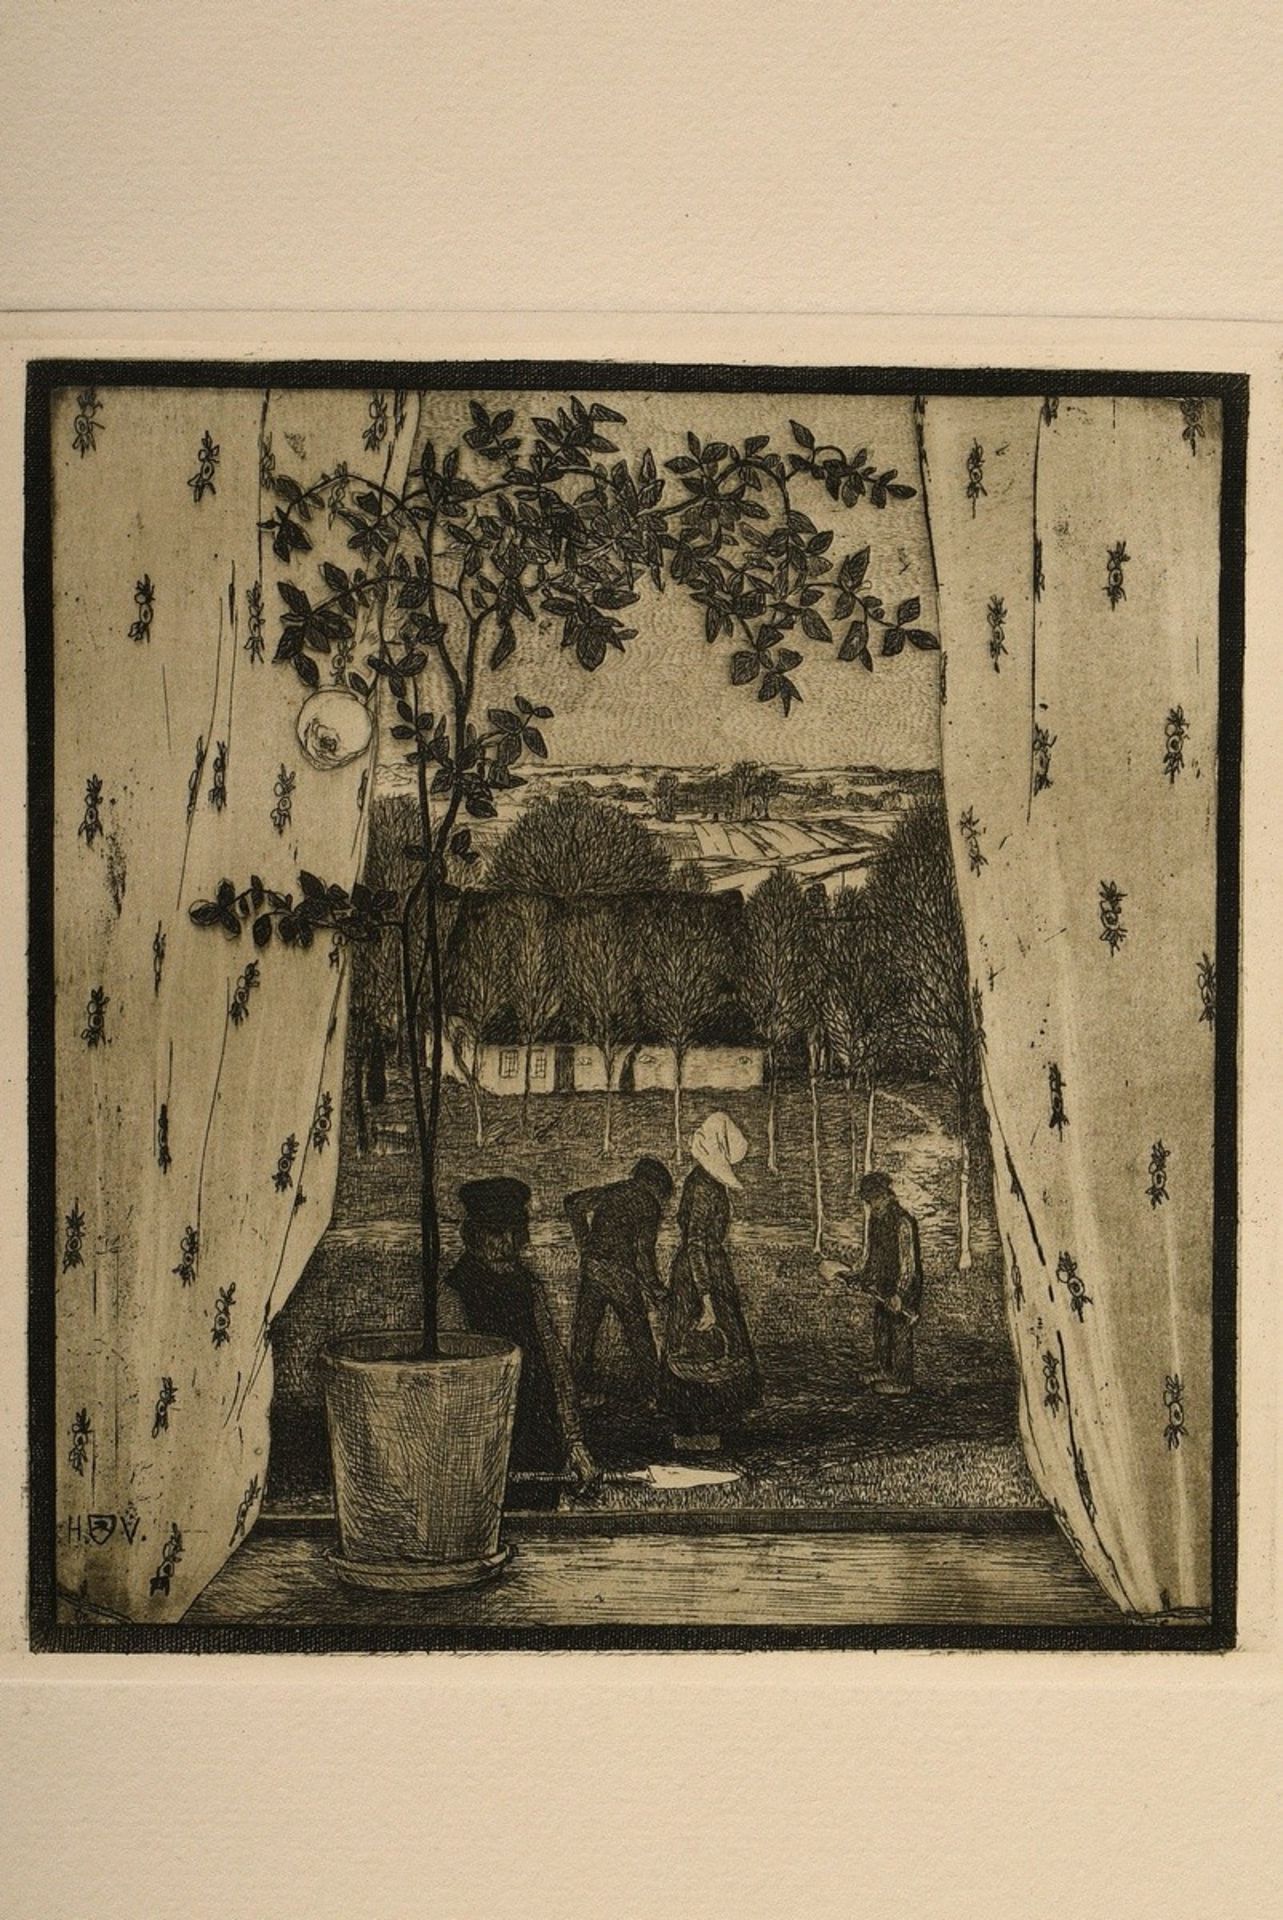 Vogeler, Heinrich (1872-1942) "An den Frühling" 1899/1901, Mappe mit 10 Radierungen und Vorblatt, P - Bild 19 aus 25